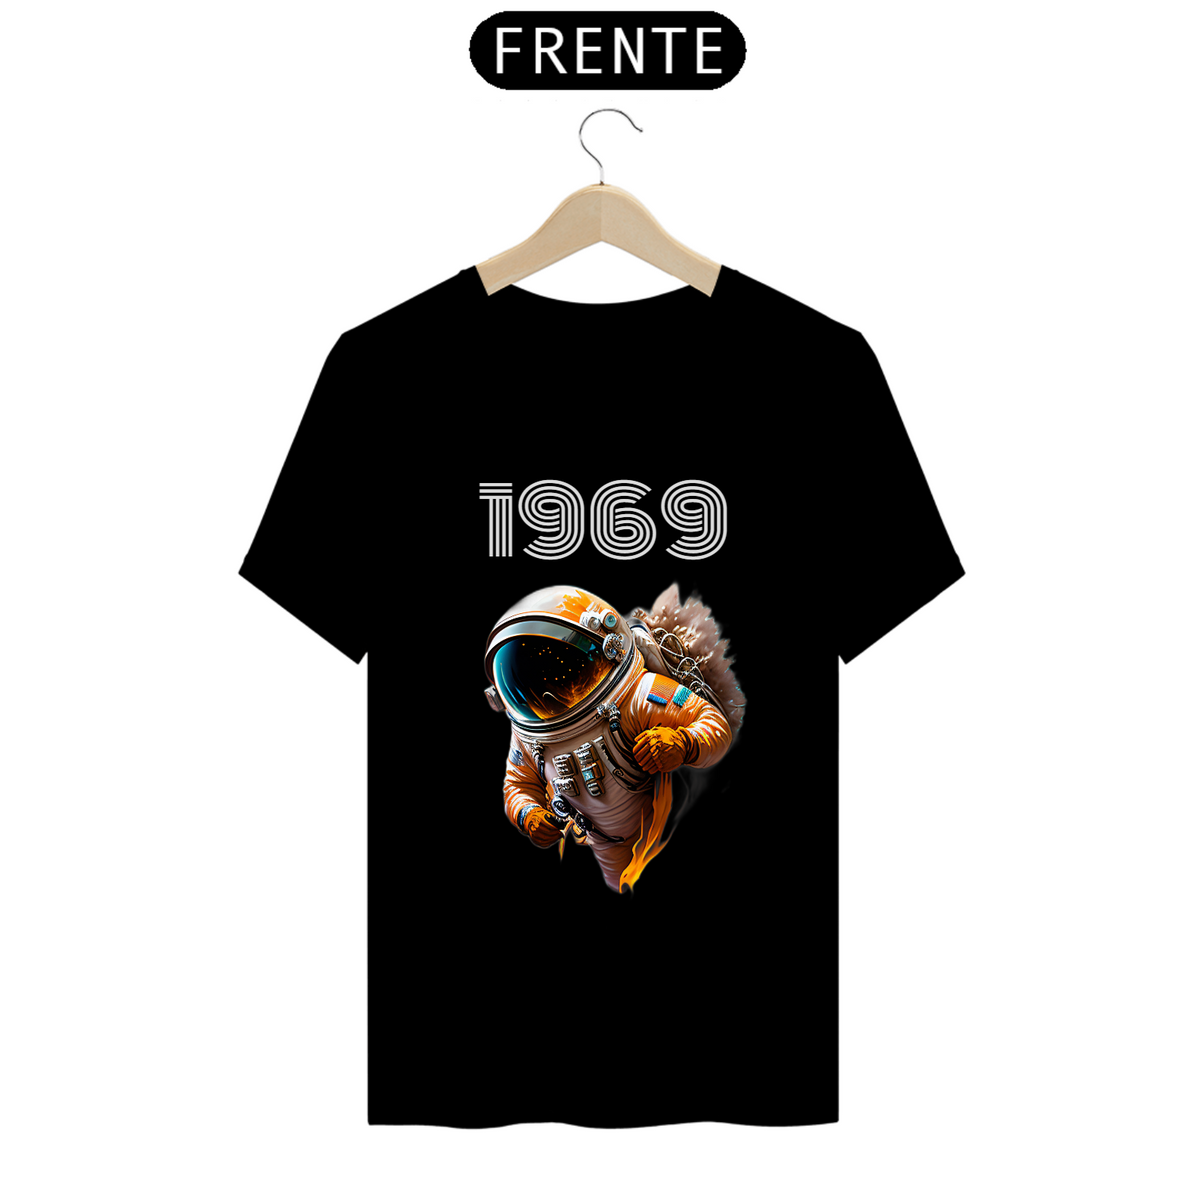 Nome do produto: Camisa Astronauta 1969